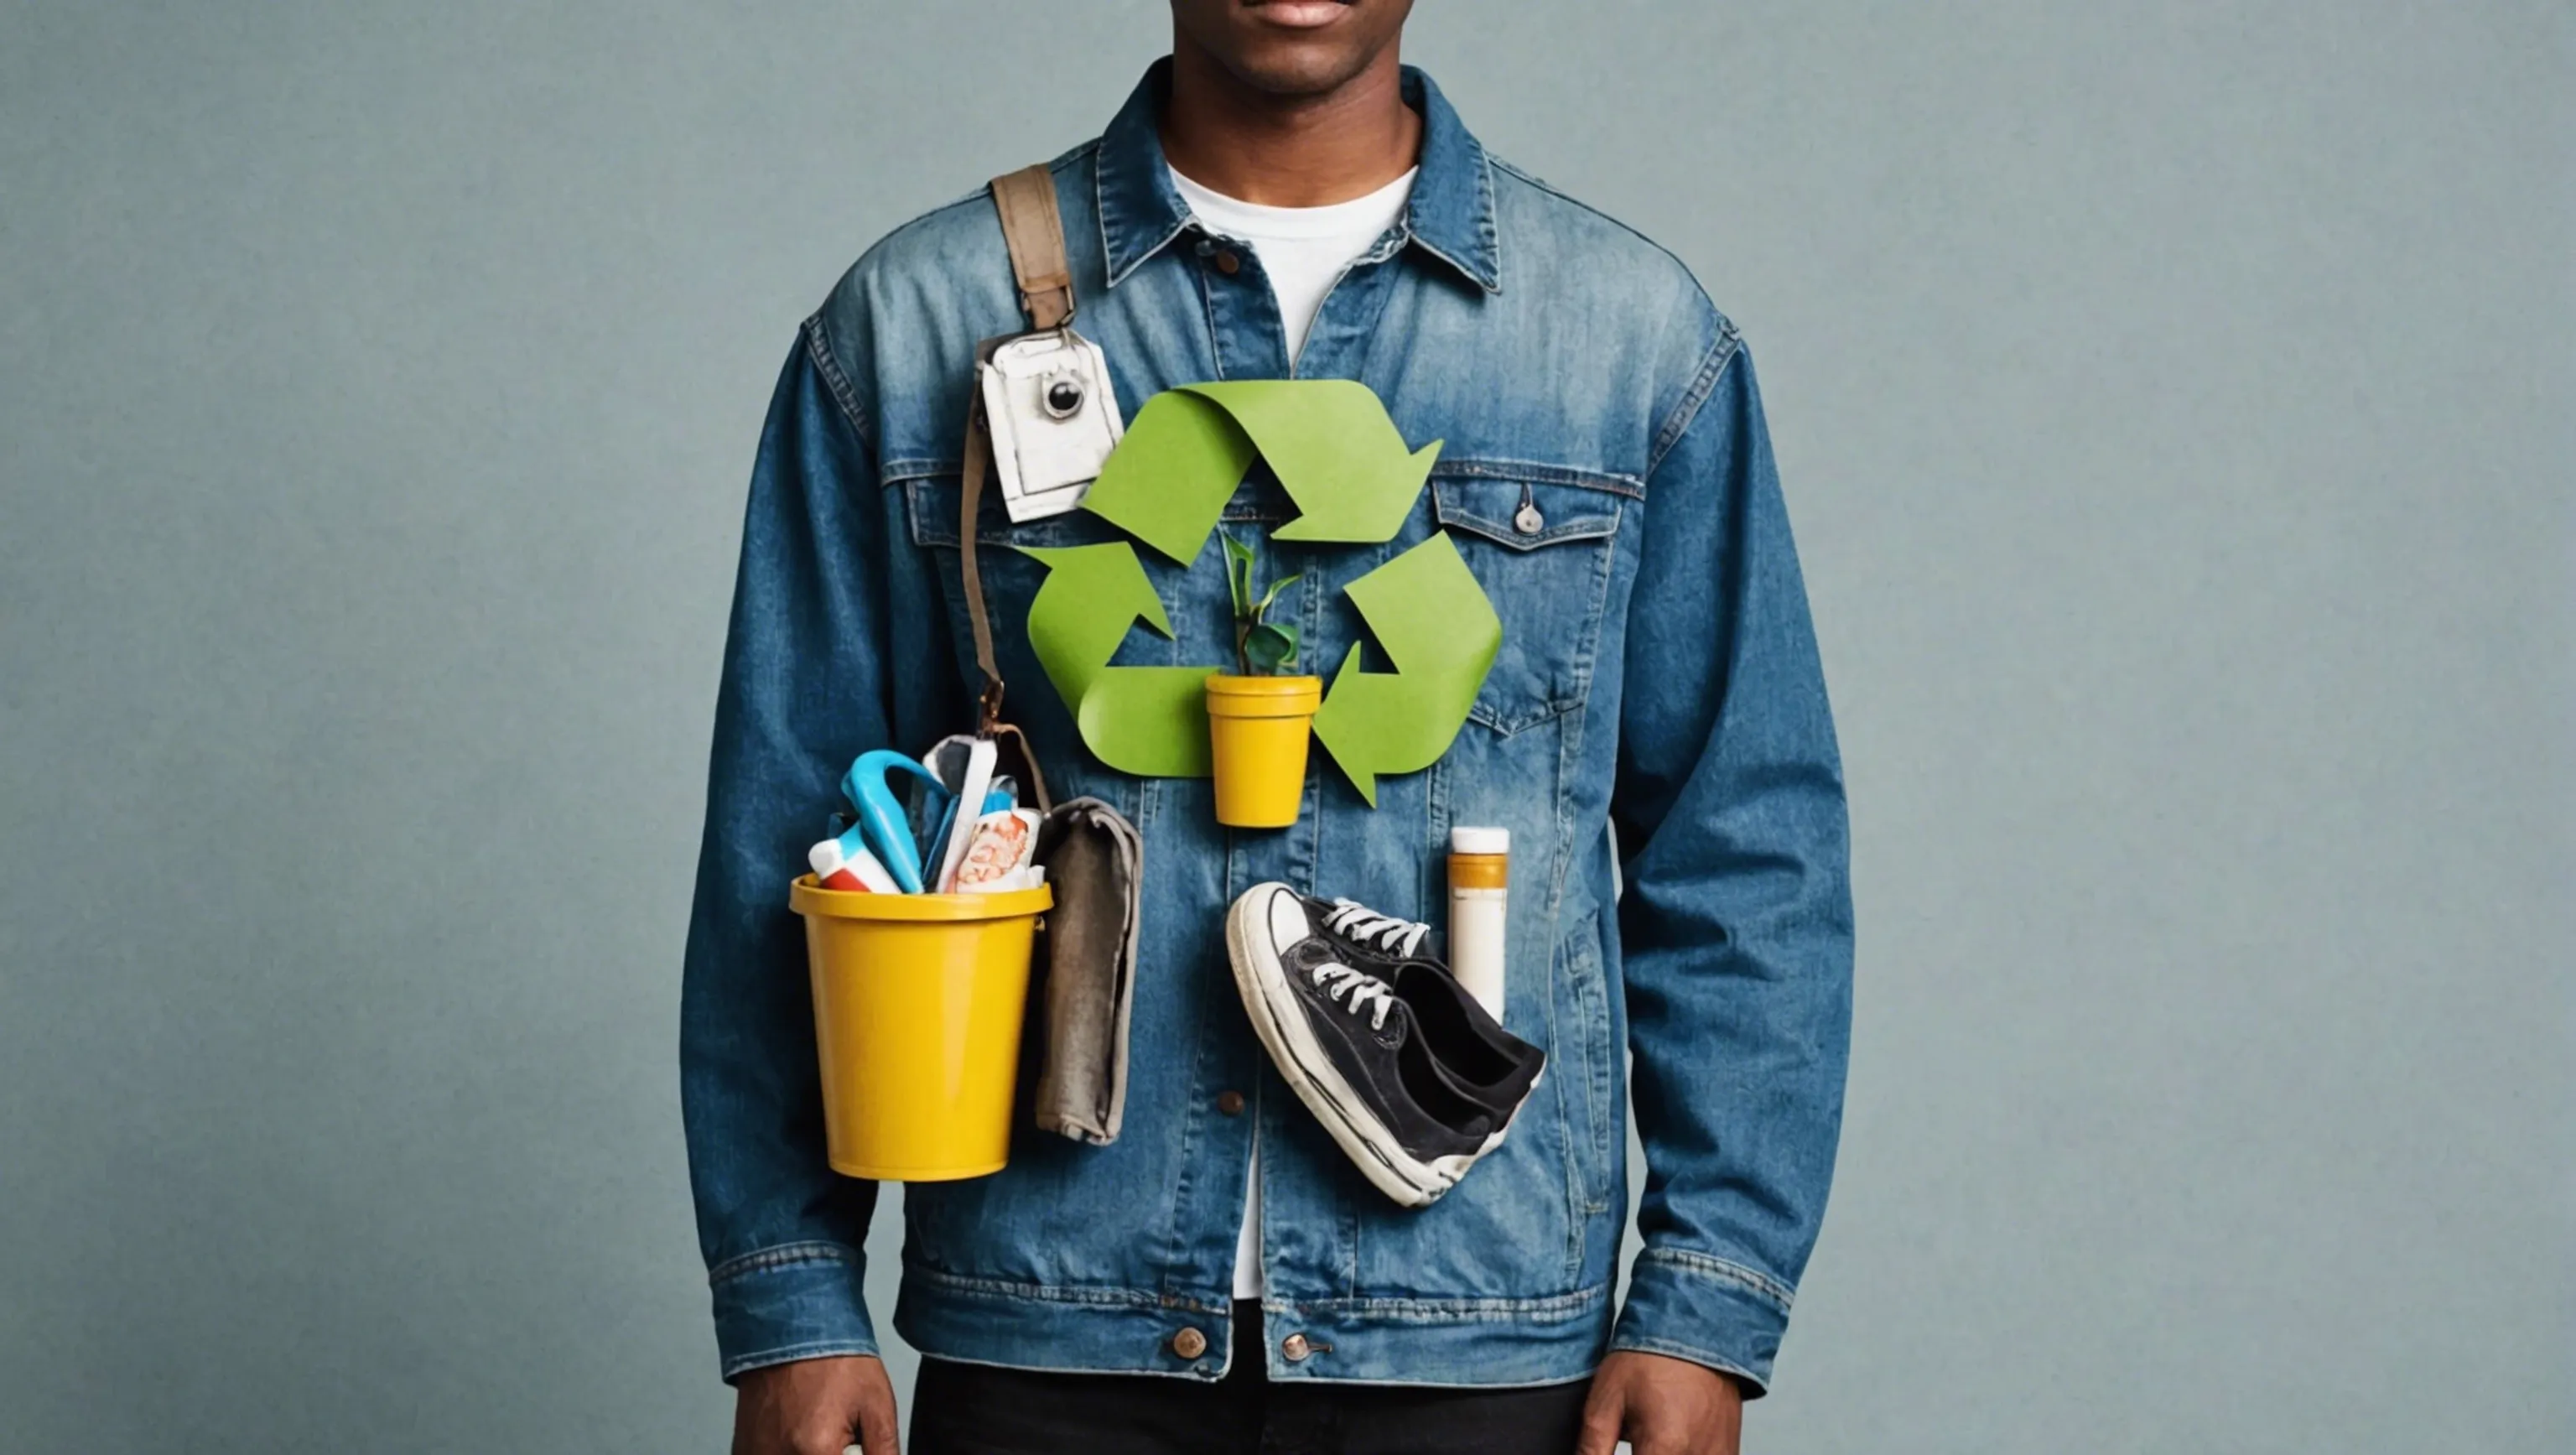 Réutiliser, recycler et donner une seconde vie à ses vêtements